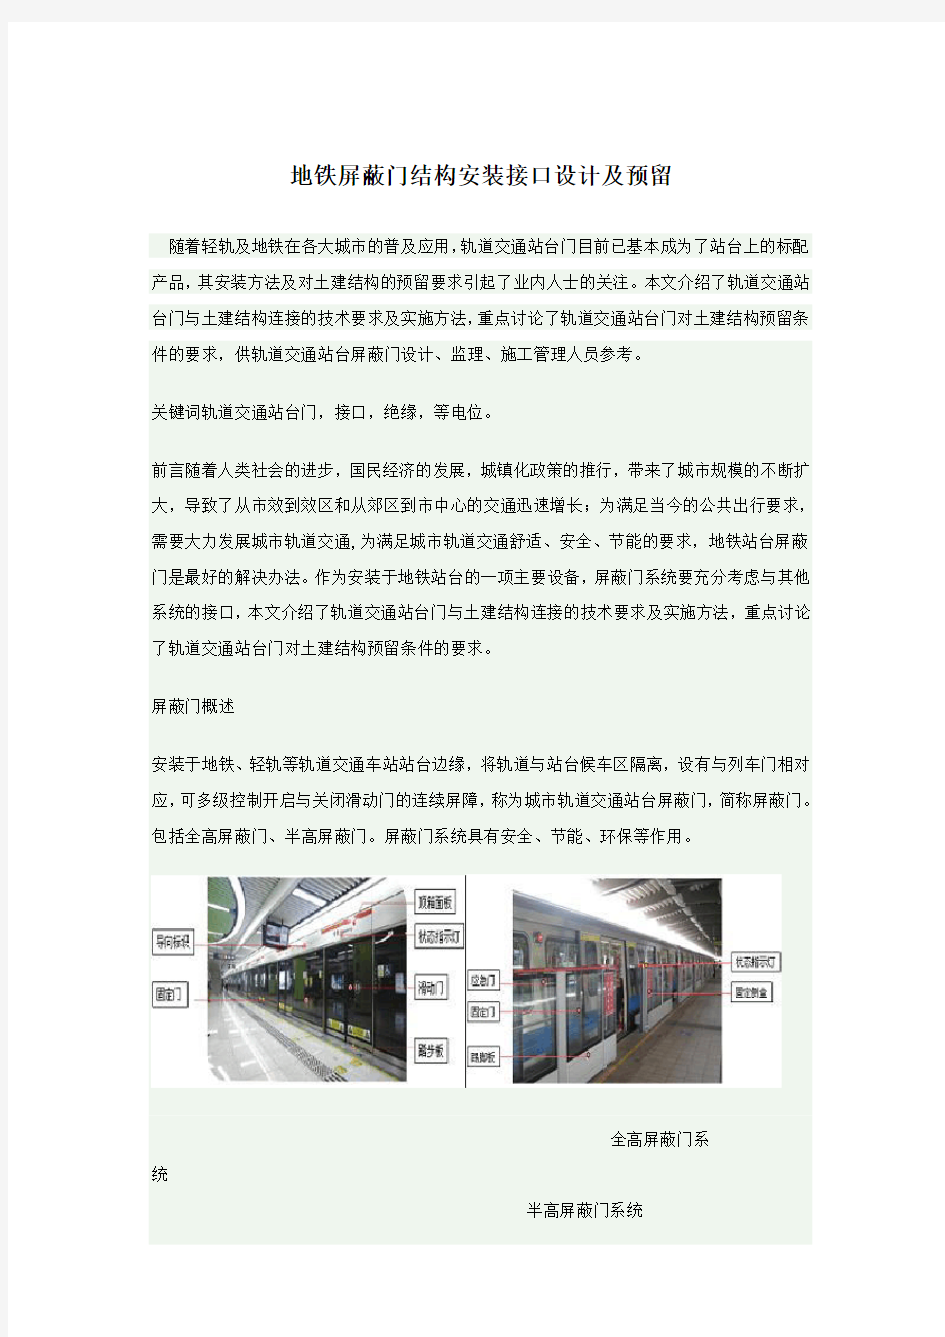 地铁屏蔽门结构安装接口设计及预留